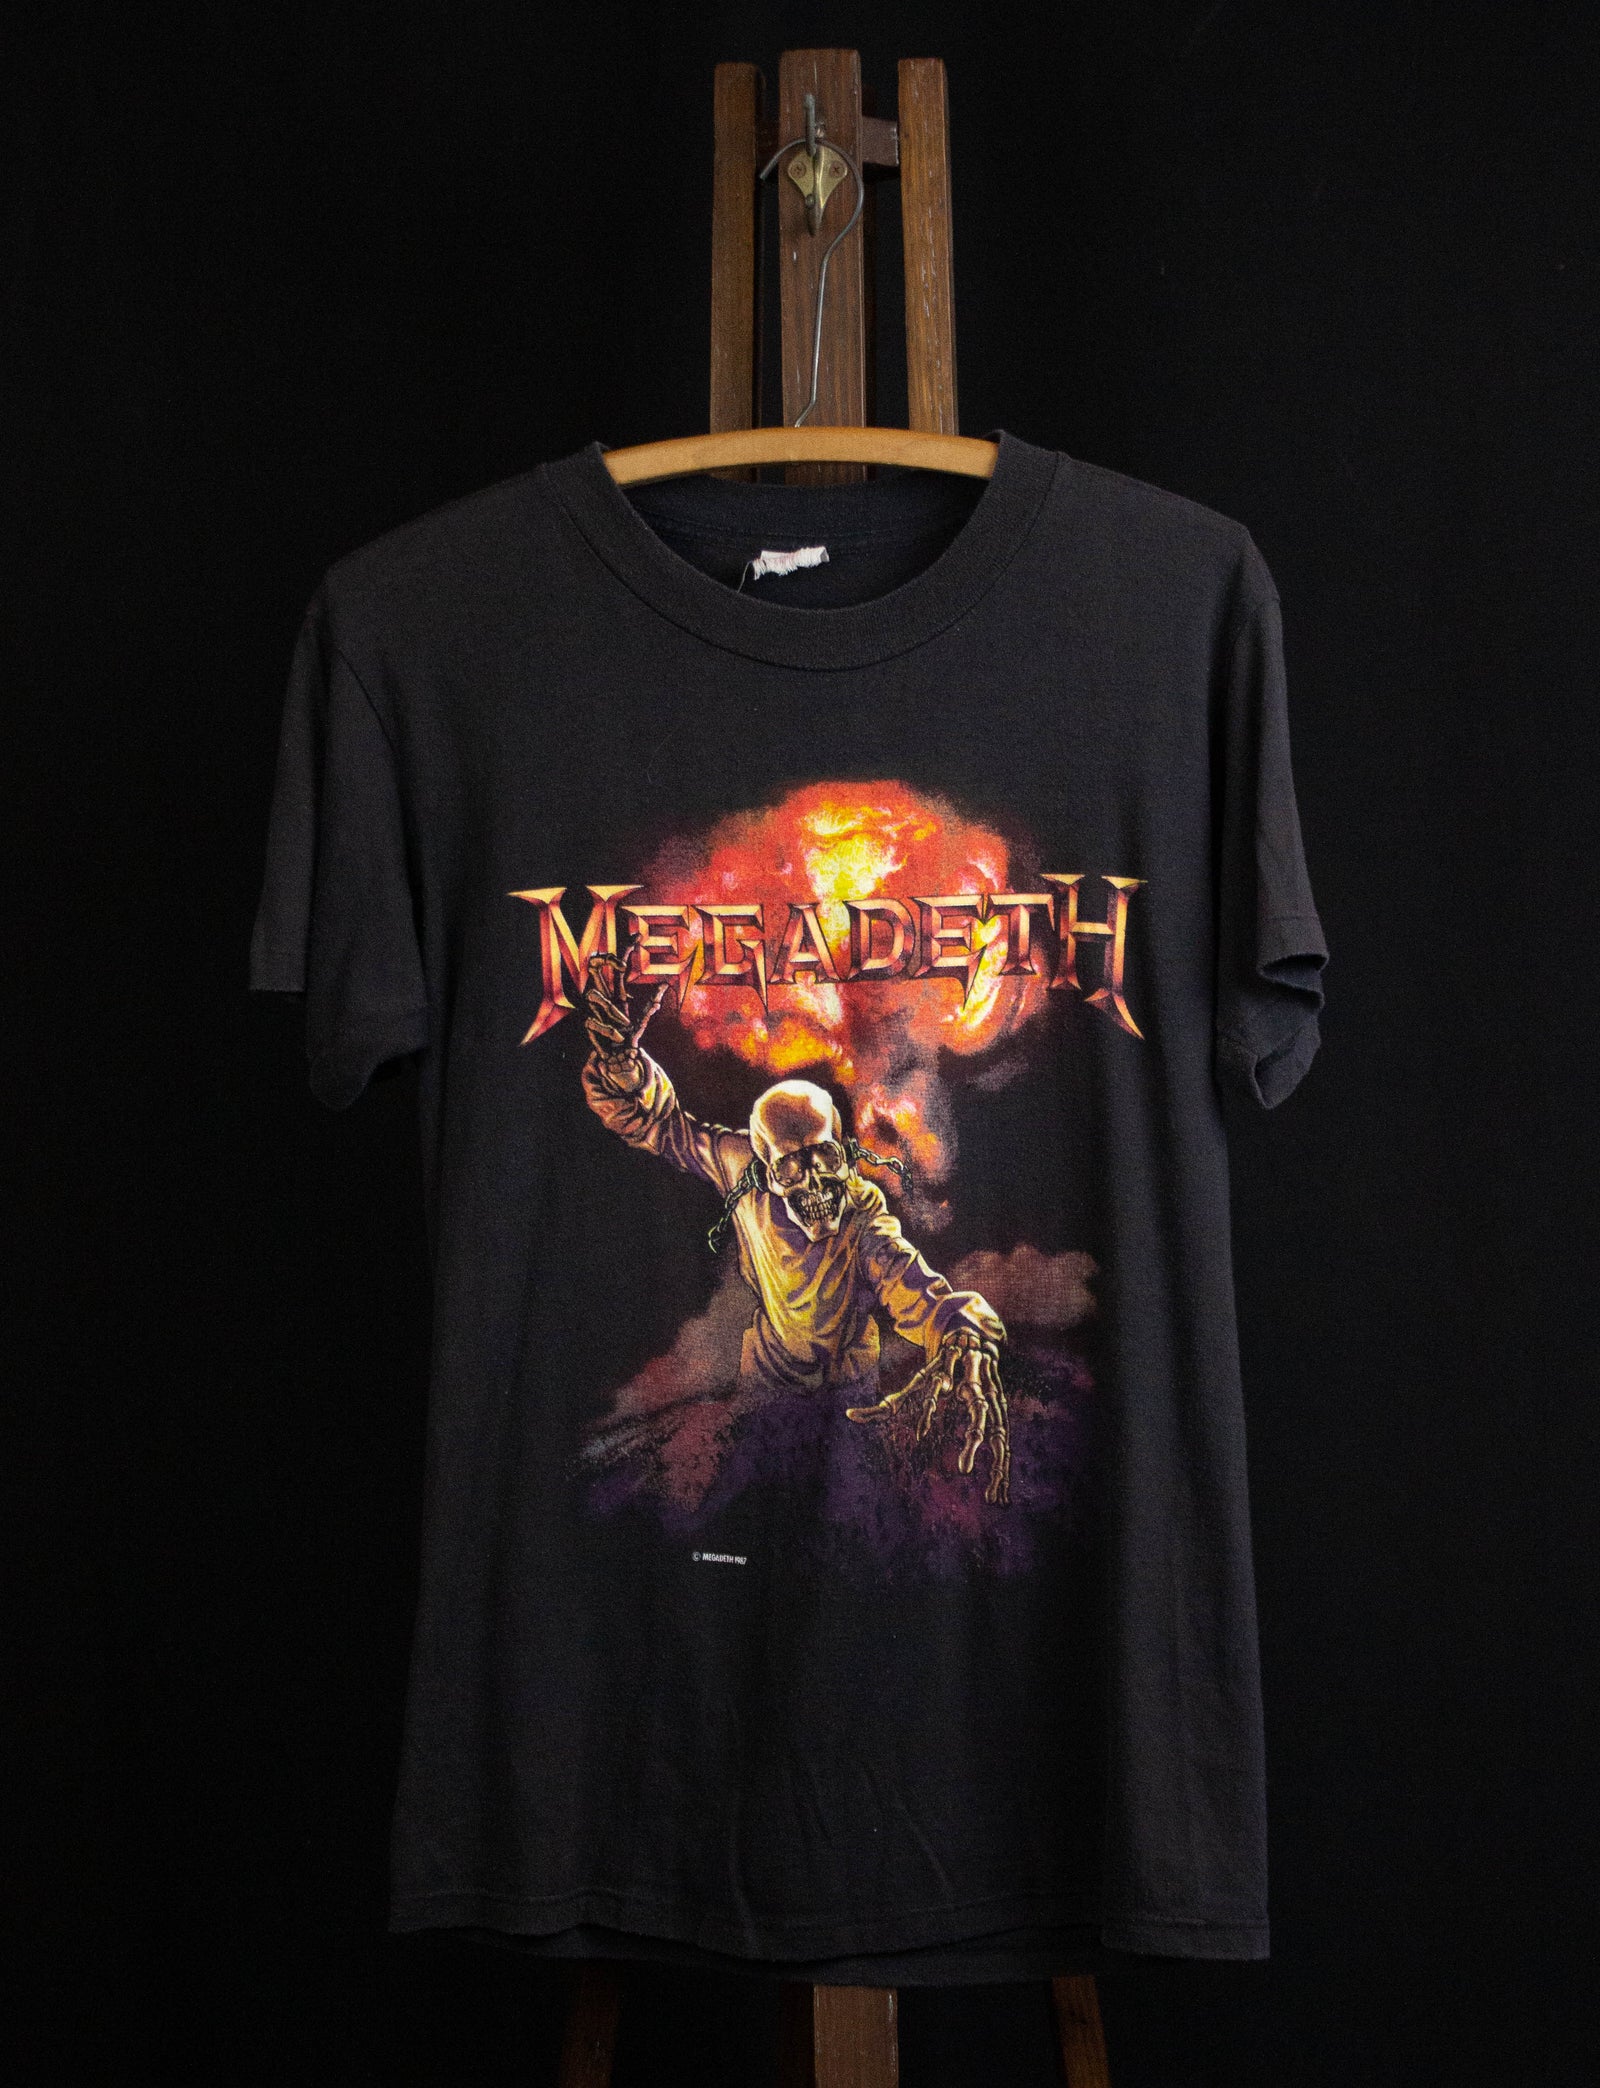 Falde sammen Urter Du bliver bedre Vintage 1987 Megadeth Definition Concert T Shirt Black Medium – Black Shag  Vintage